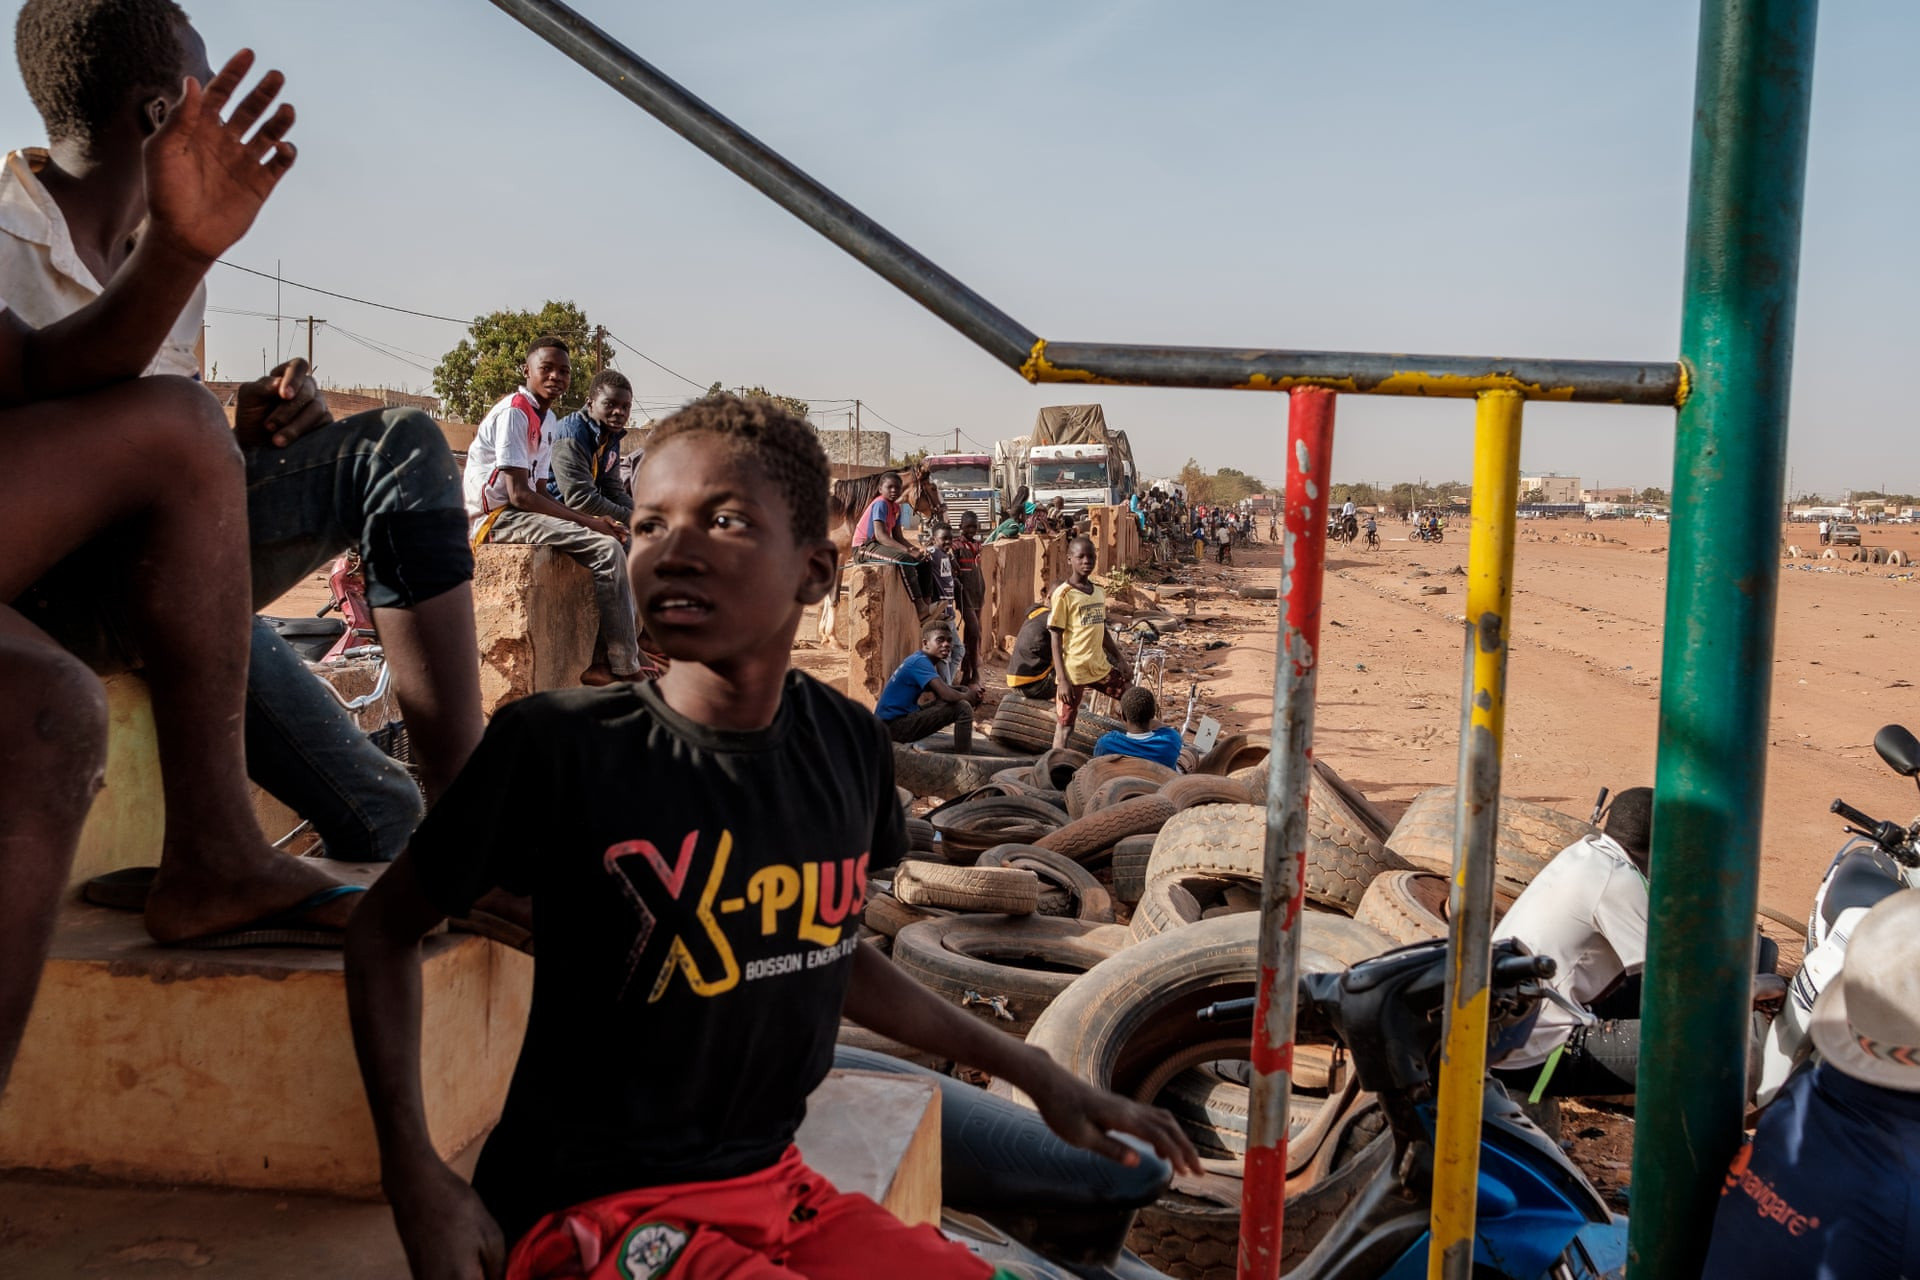 Khán giả ngồi trên khán đài bao quanh đường đua trong trường đua ngựa Ouagadougou - một đường đua đầy bụi được lót bằng lốp xe. Ảnh: Guy Peterson / The Guardian.